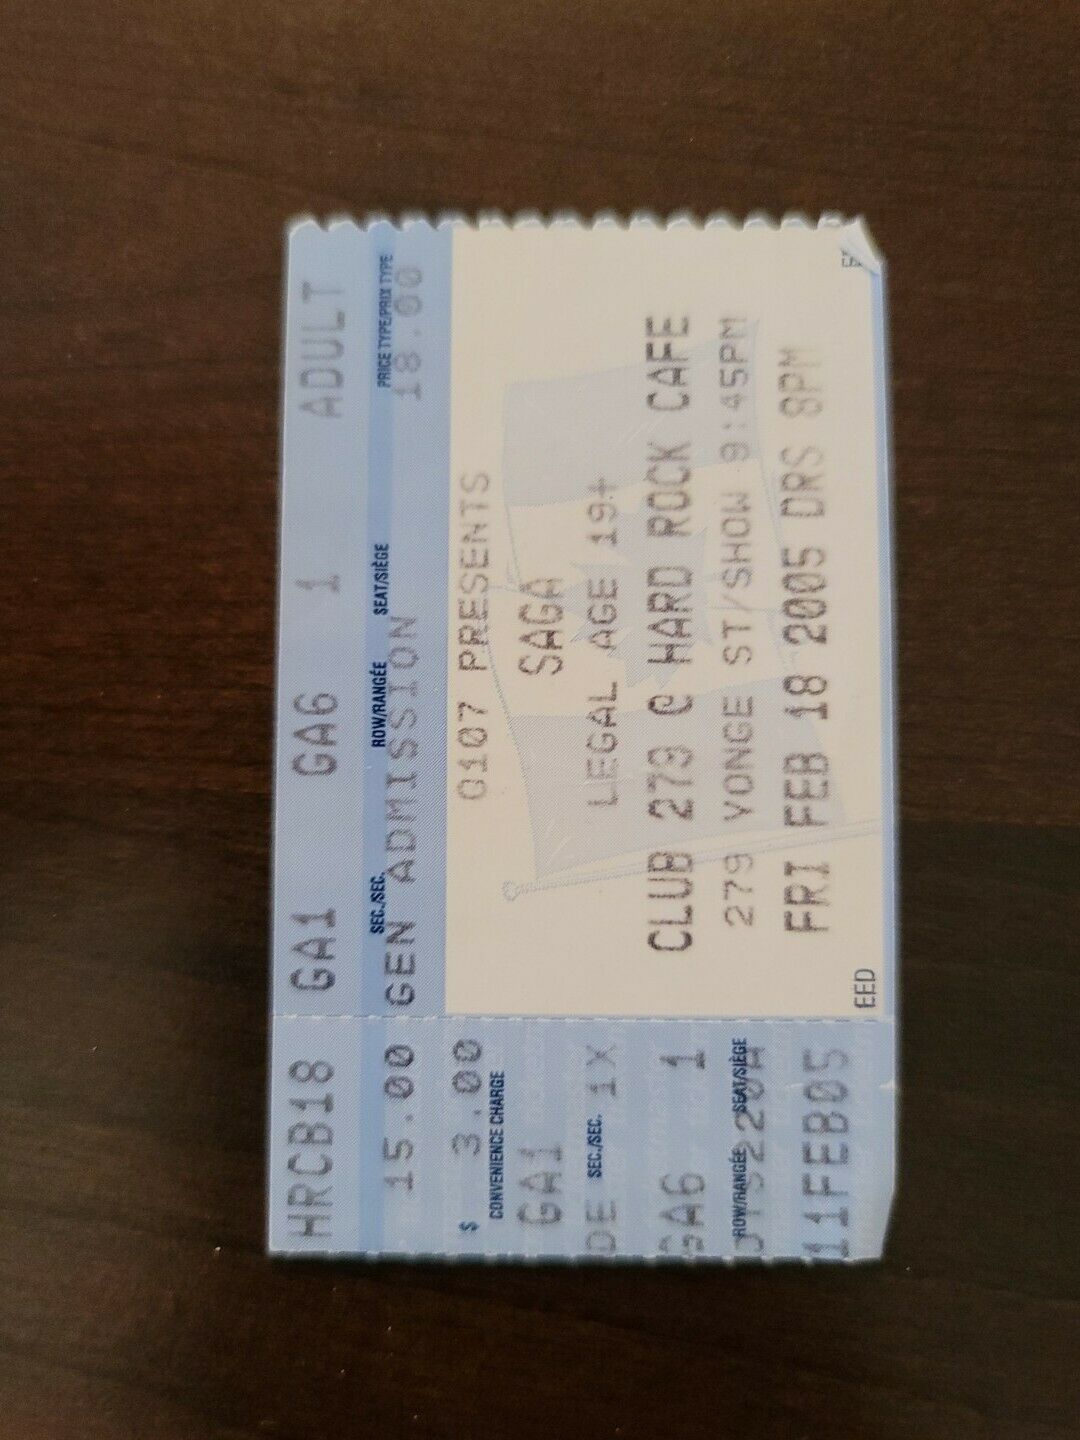 SAGA 2005, Toronto Hard Rock Cafe Original Concert Ticket Stub